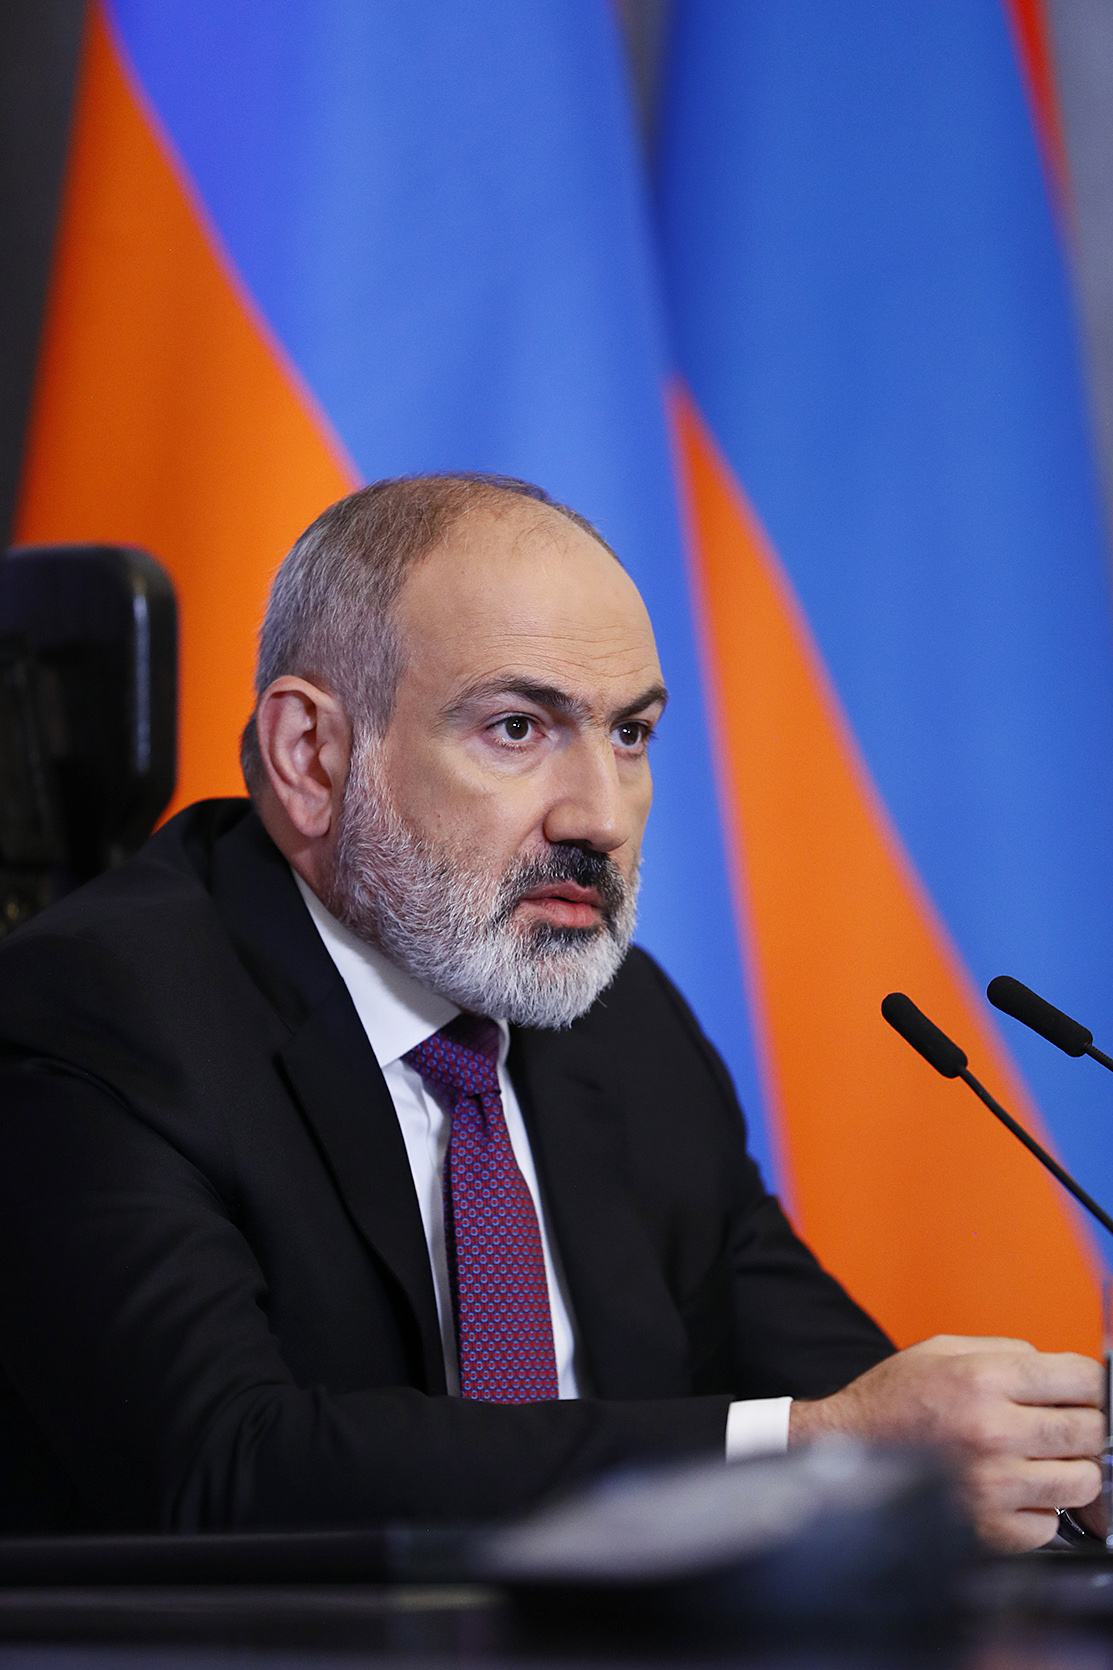 Հայաստանի անվտանգության ապահովման ռազմավարական երաշխիքը խաղաղությունն է, որը հնարավոր է բոլոր հարևանների հետ հարաբերությունները կարգավորելու միջոցով. վարչապետ